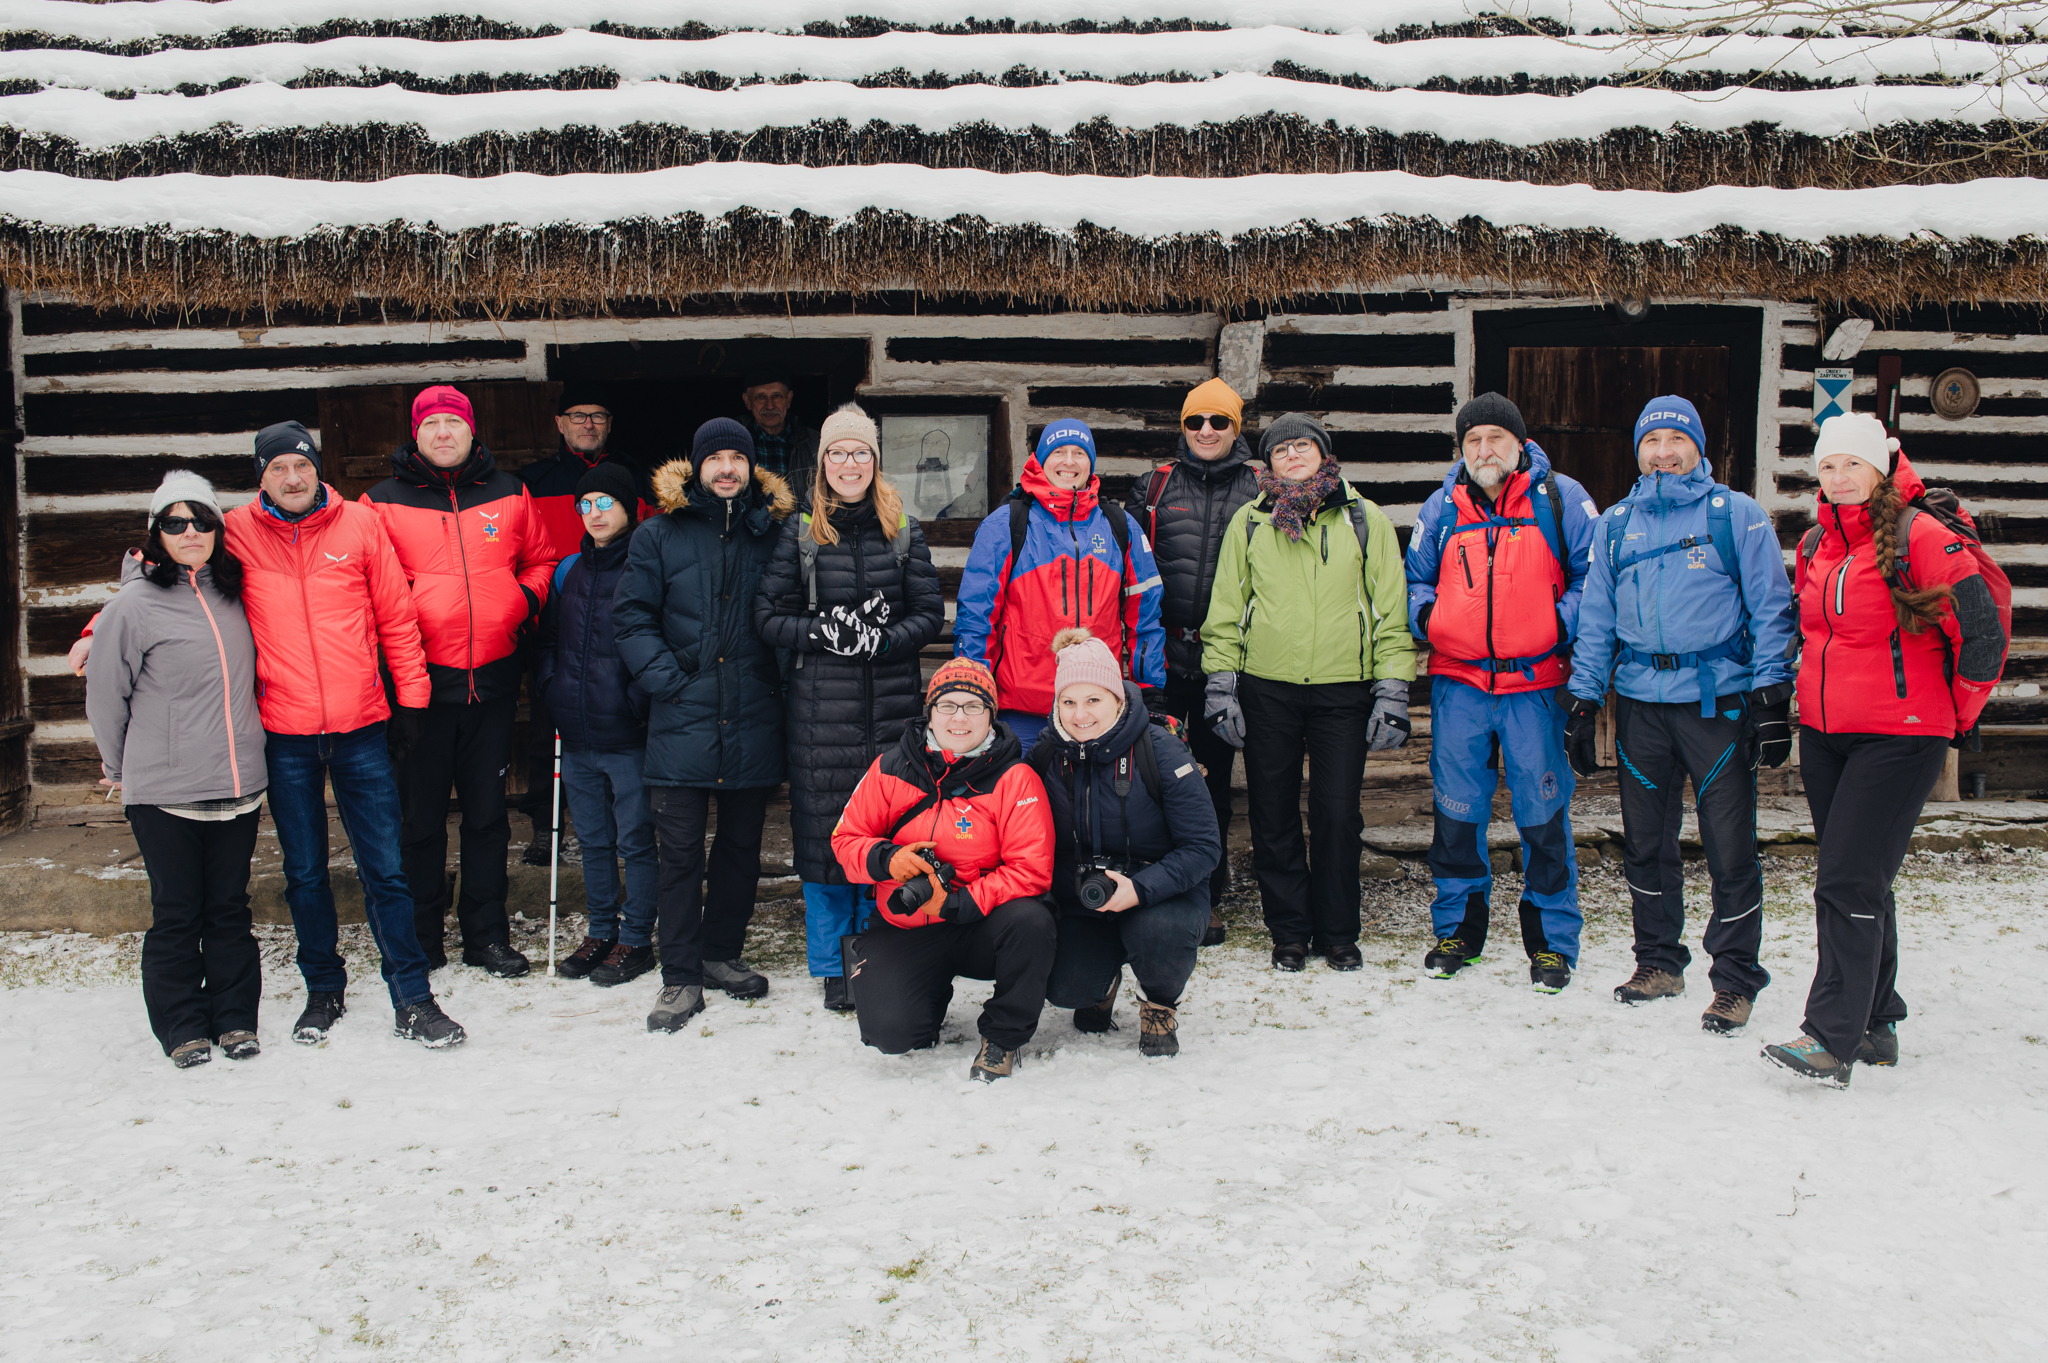 Na zdjęciu grupa 16 osób ubrana w zimowe kurtki, czapki, szaliki i rękawiczki. Grupa stoi przed drewnianą chatą pokrytą śniegiem. Panuje radosna atmosfera, uczestnicy szkolenia uśmiechają się.